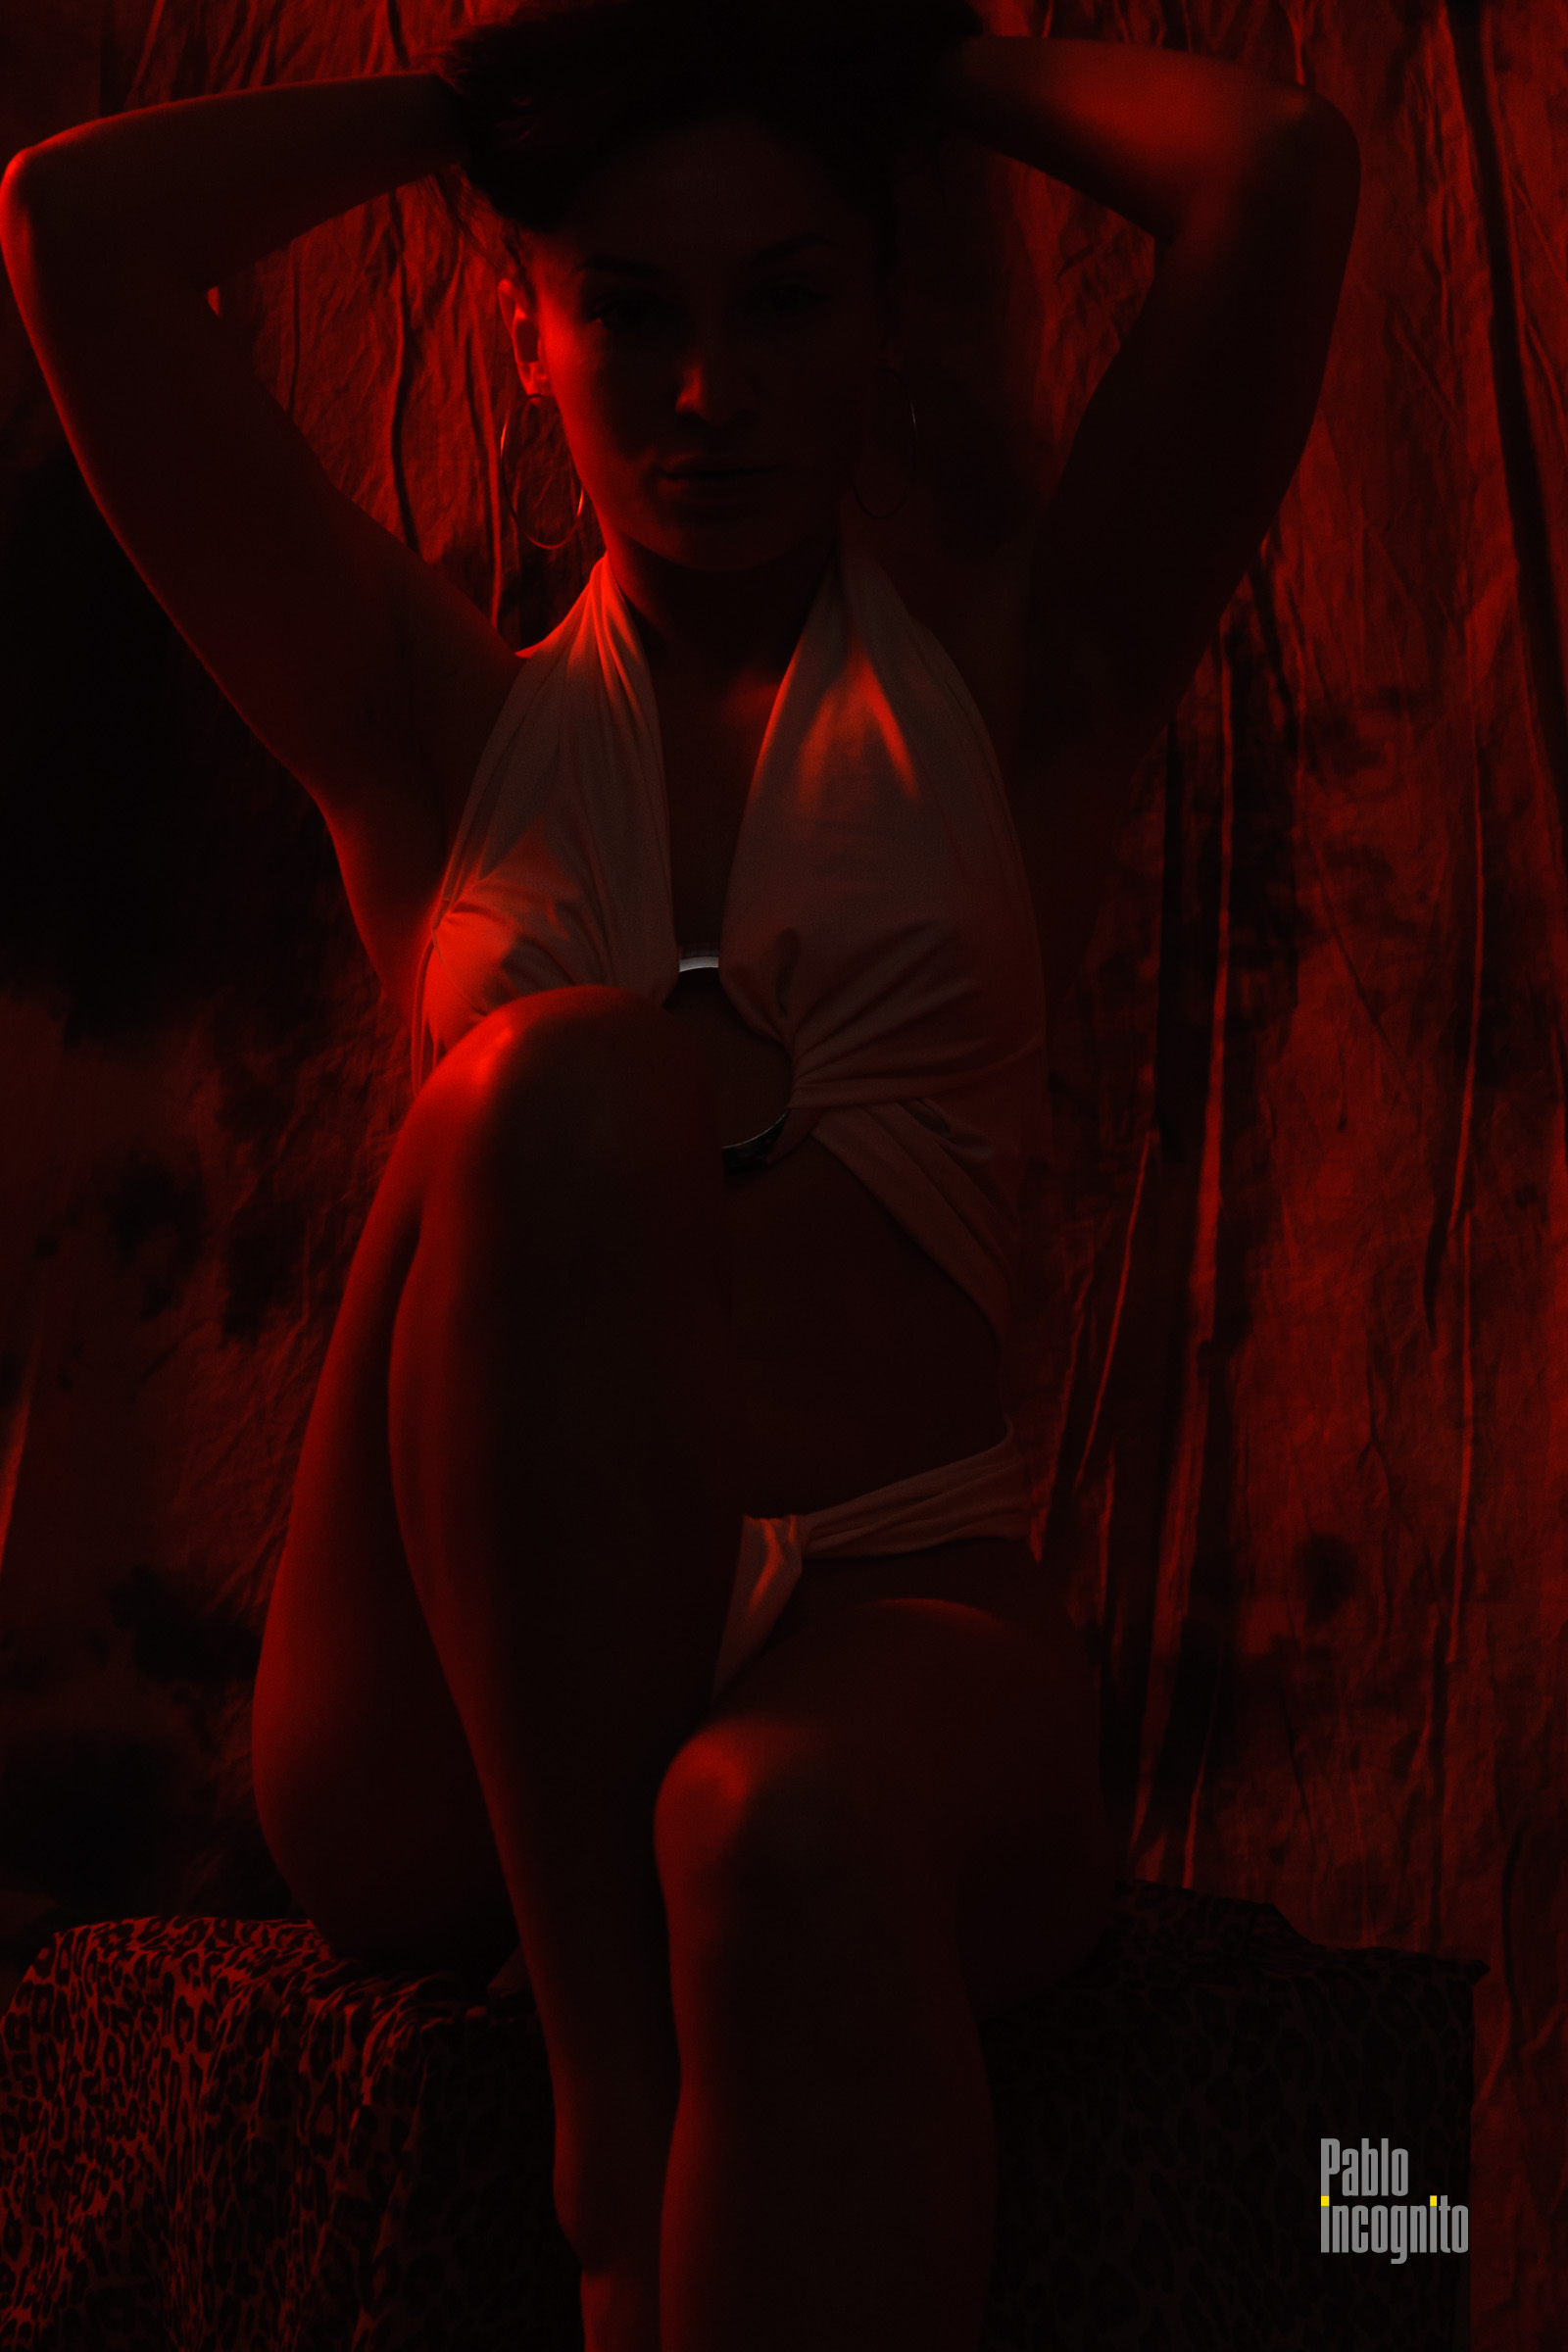 Erotic Red Light: Nude photo in studio - Pablo Incognito